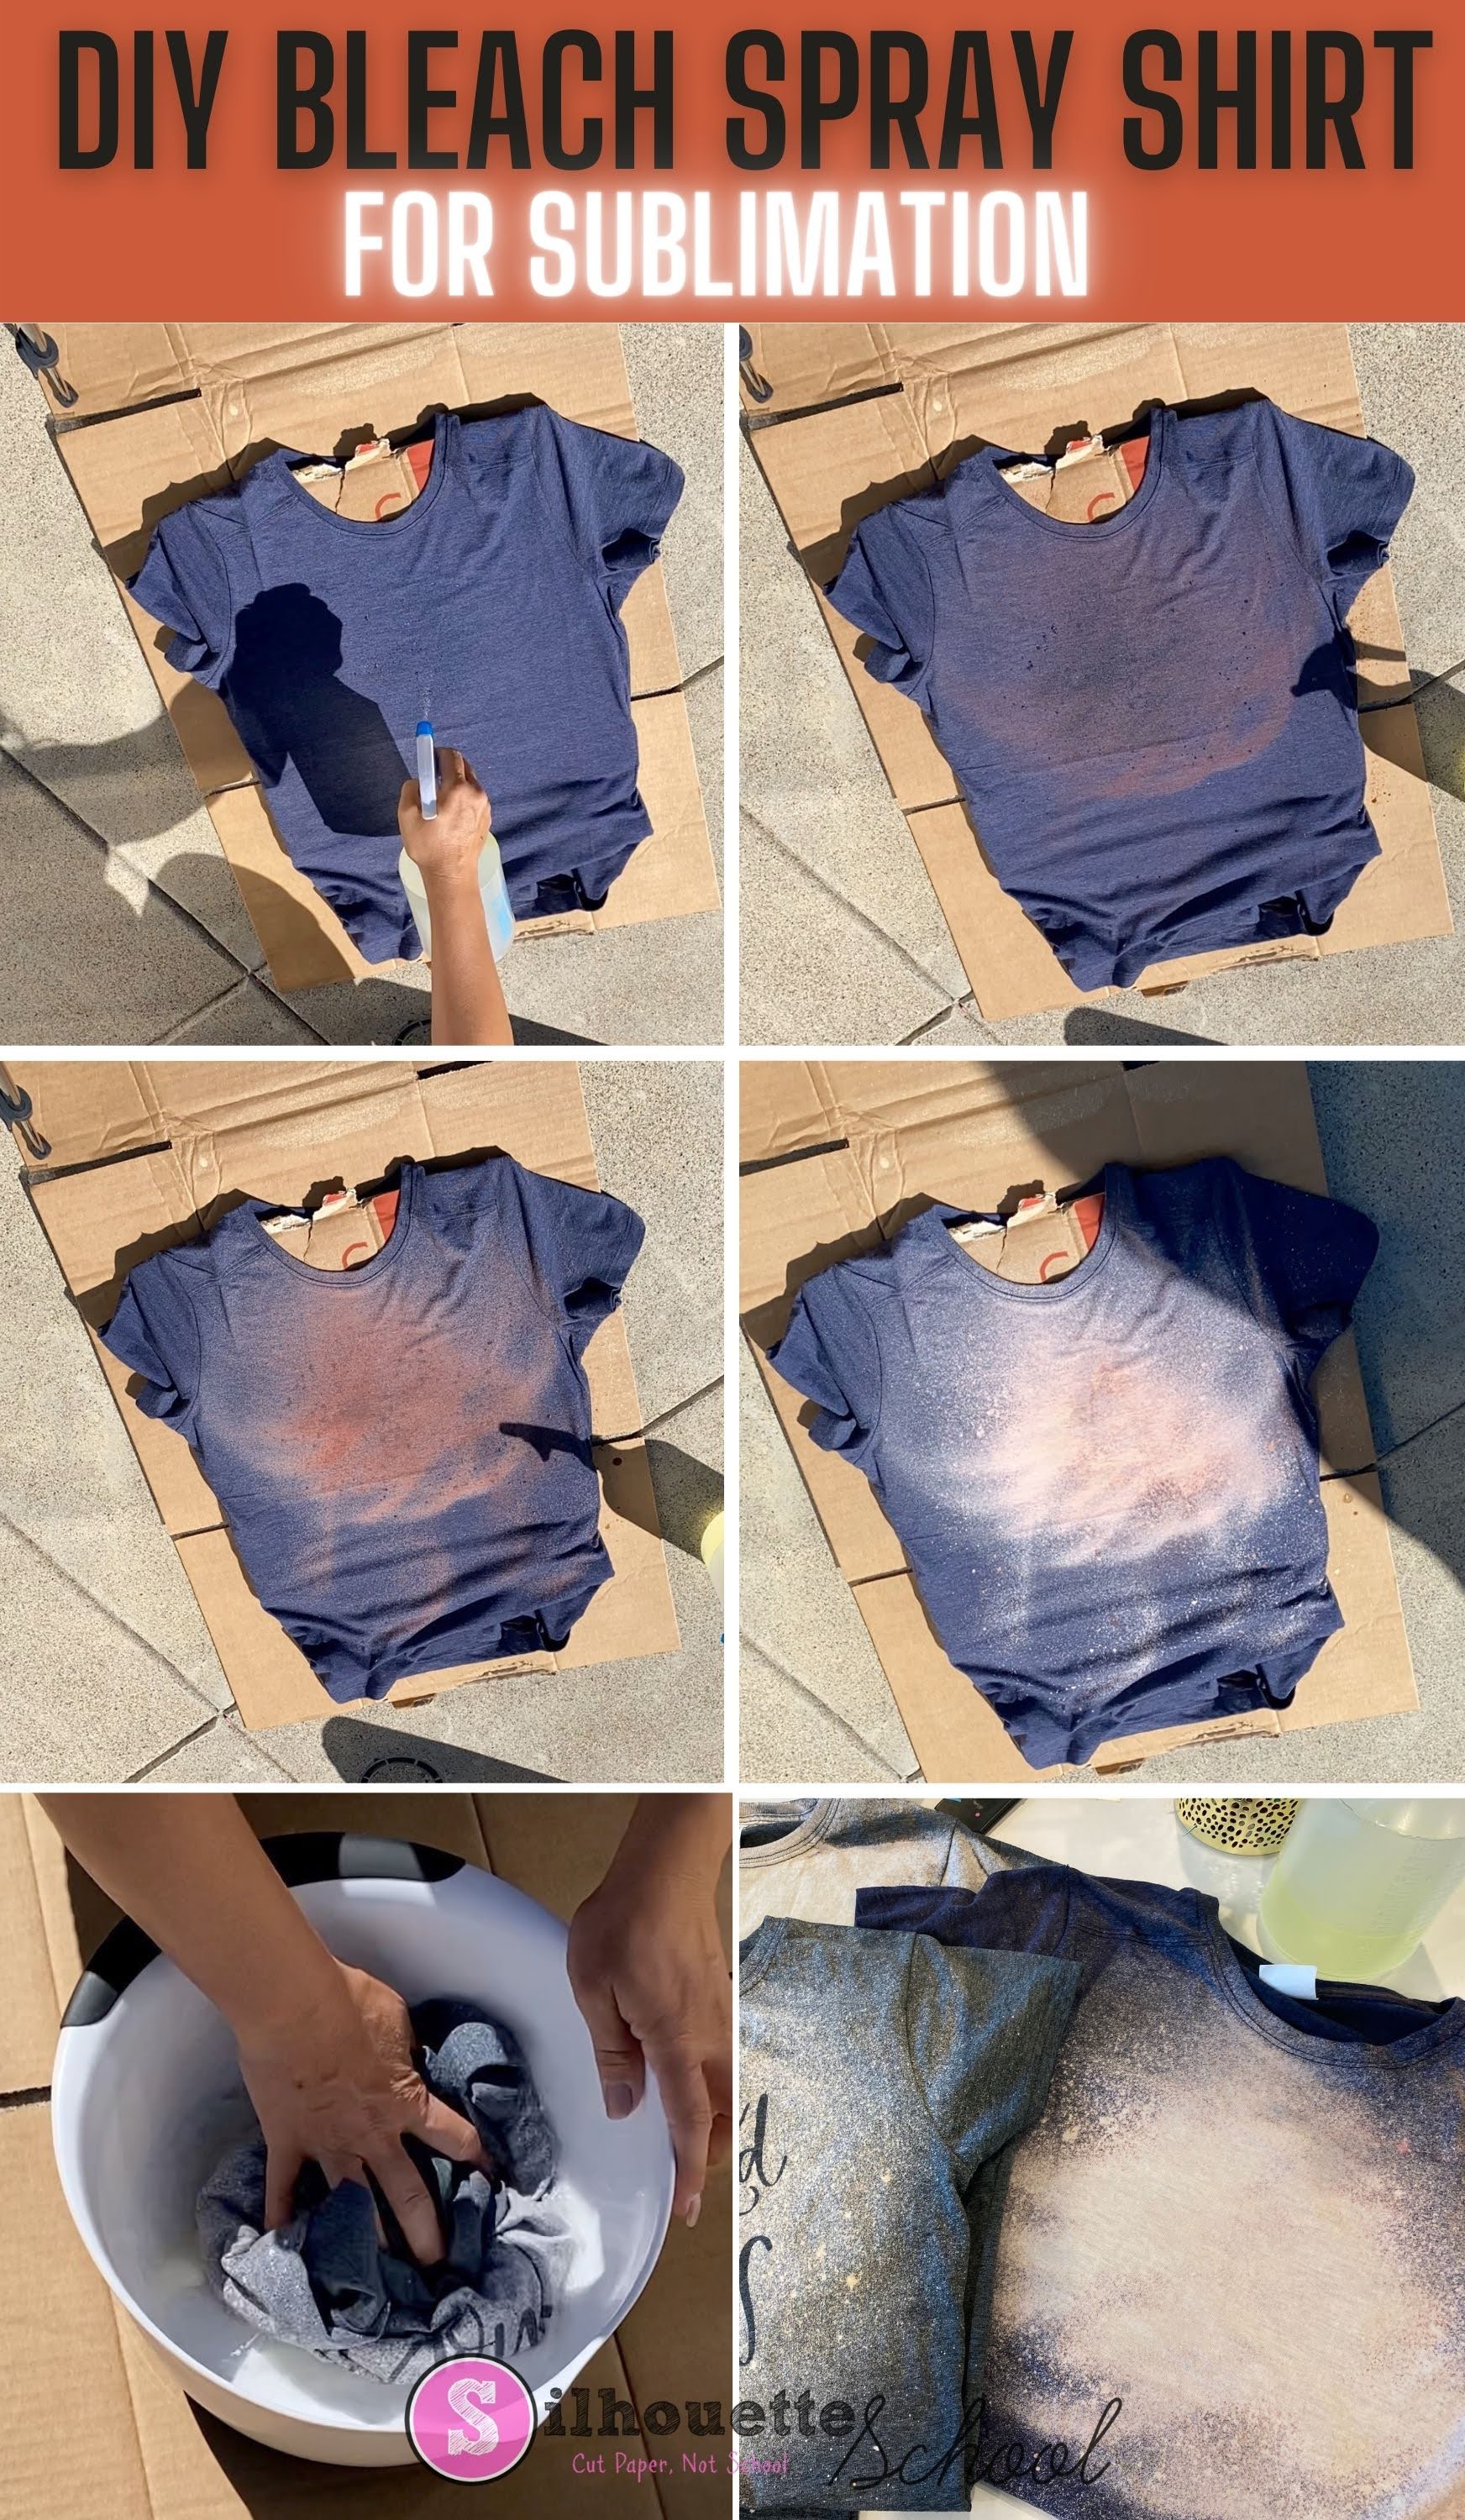 LV BLEACHED SHIRTS  Diy distressed jeans, Cute shirt designs, Bleach shirts